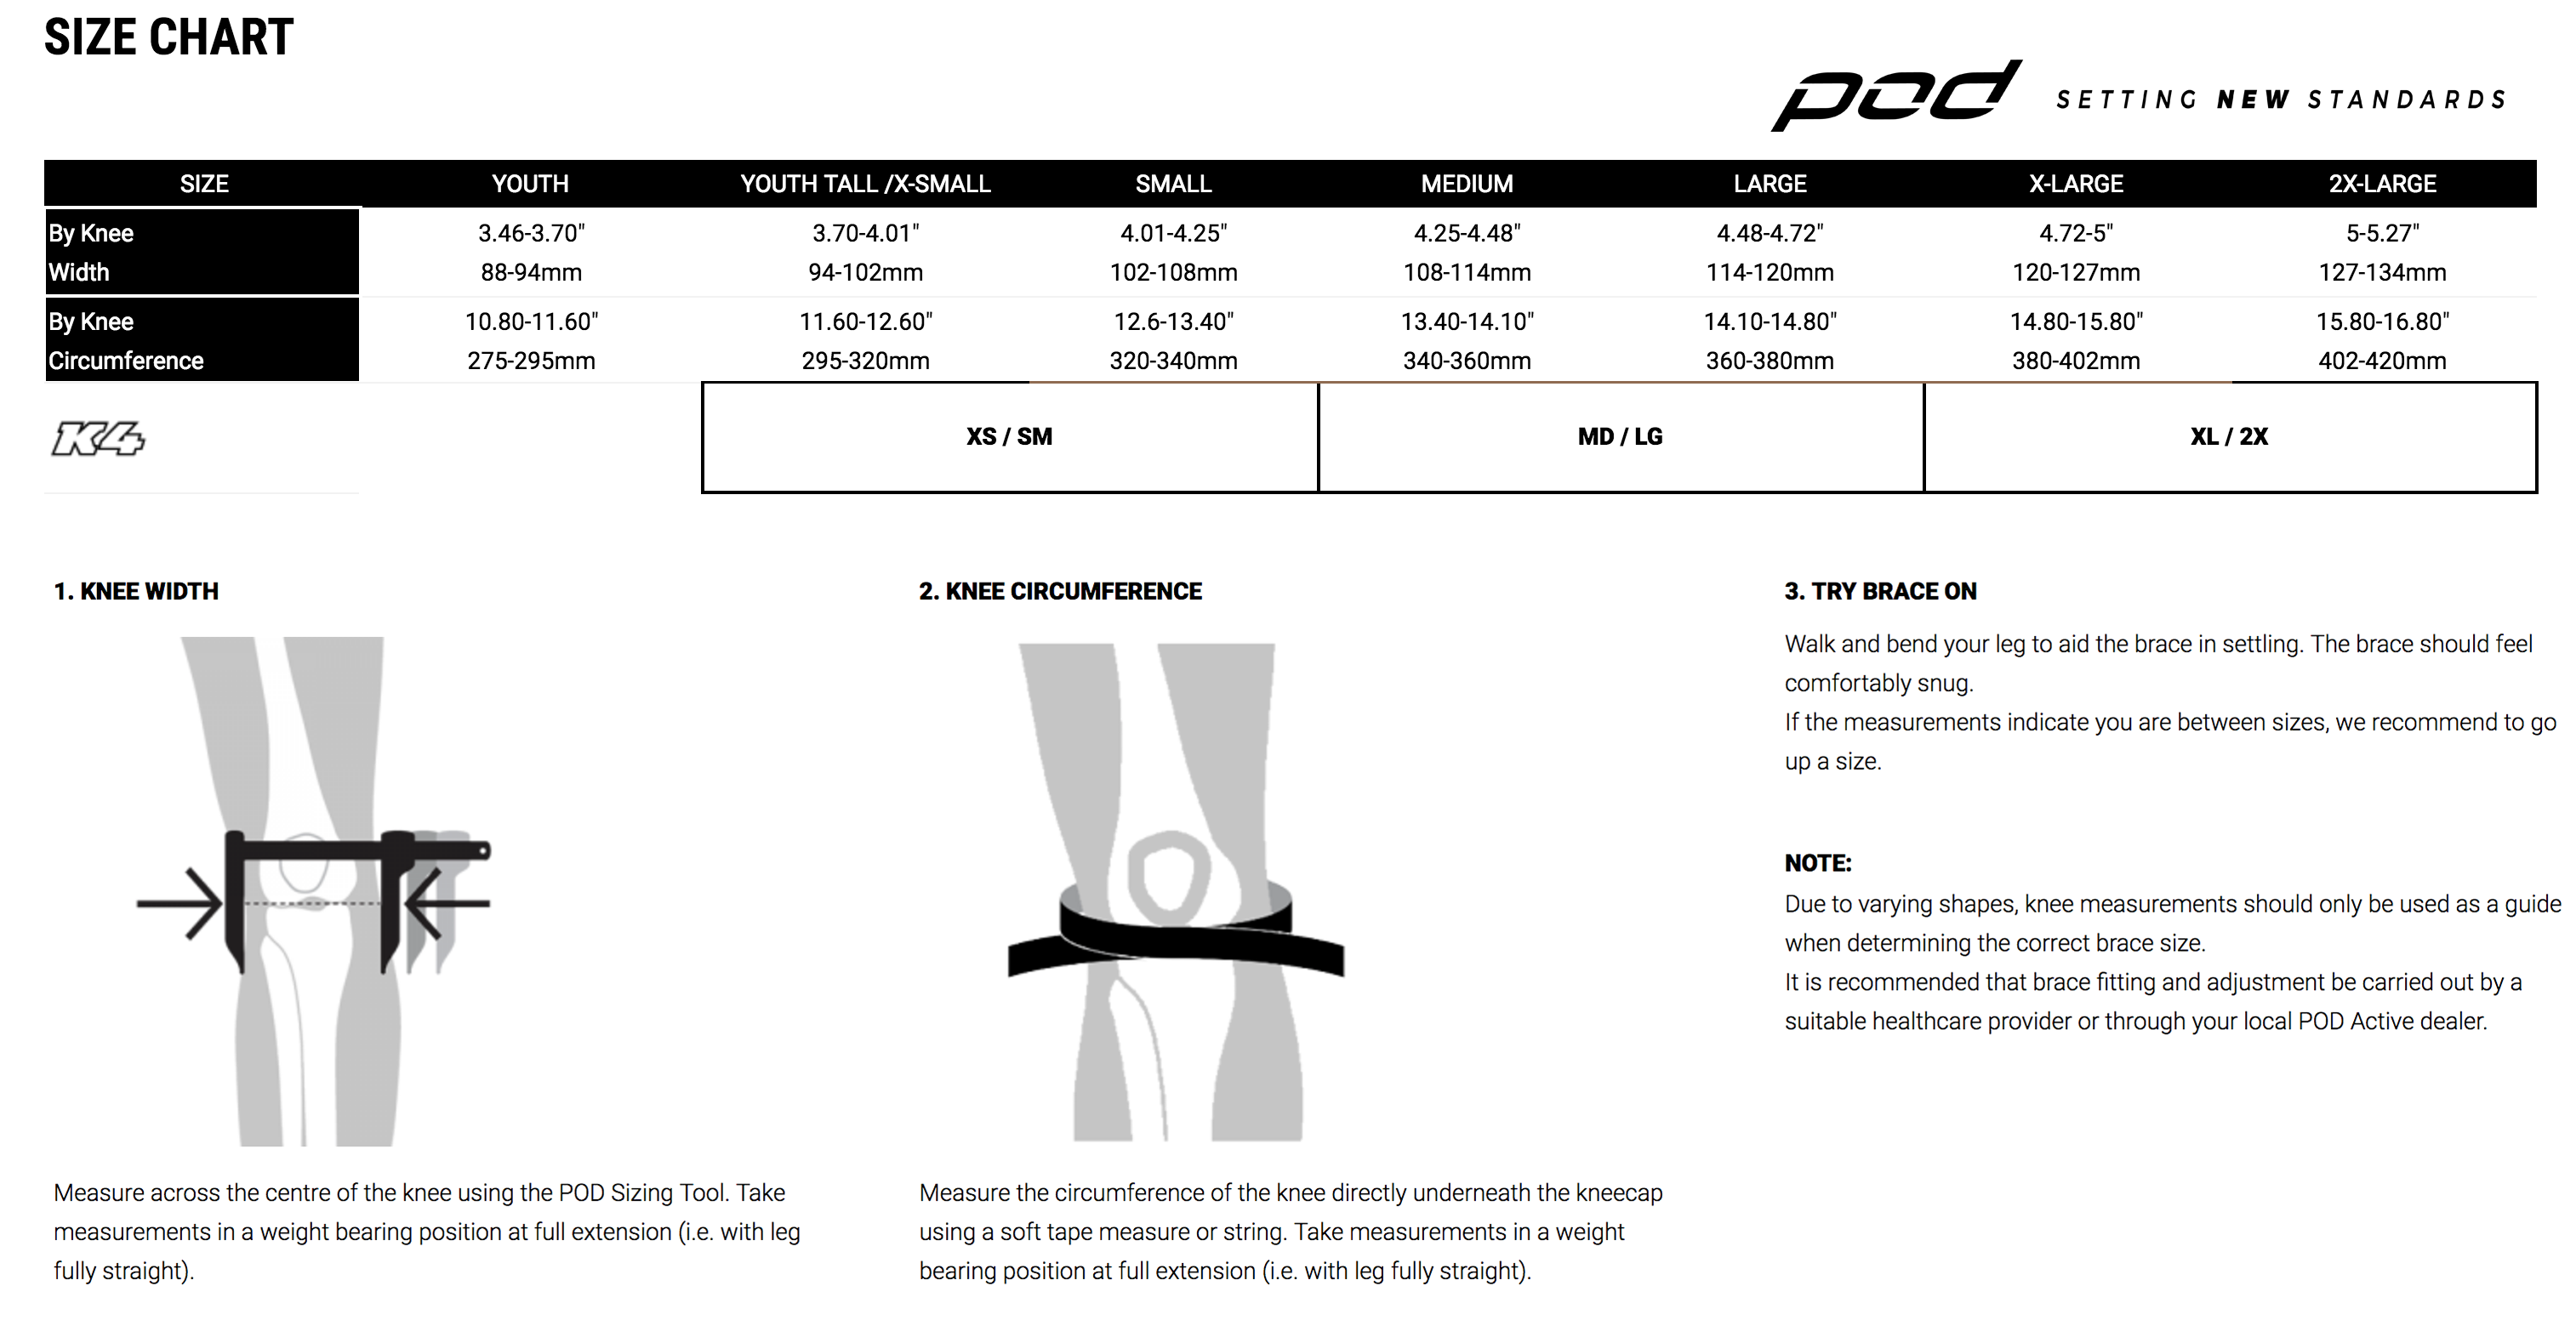 Podmx - K4 2.0 Knee Brace - LEFT Size Guide